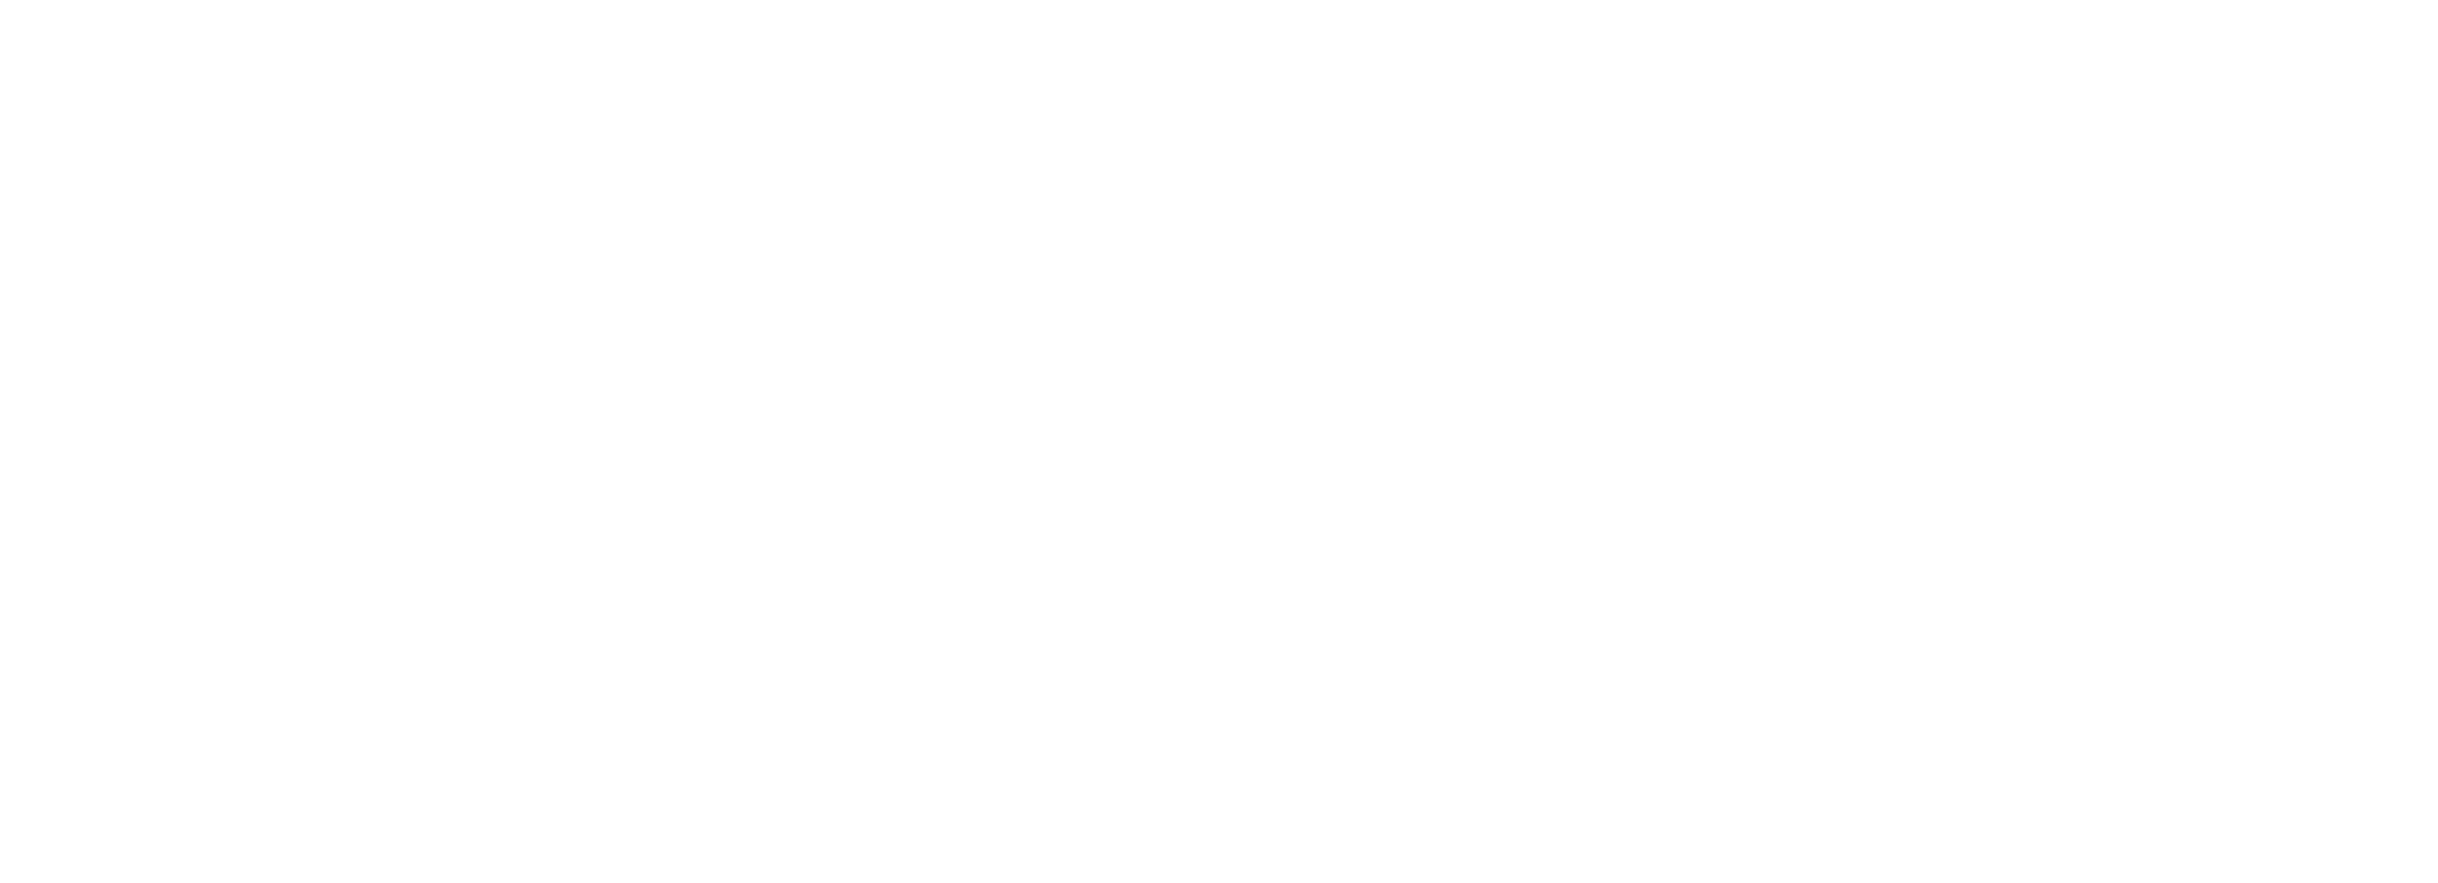 Boardroom Events Logo